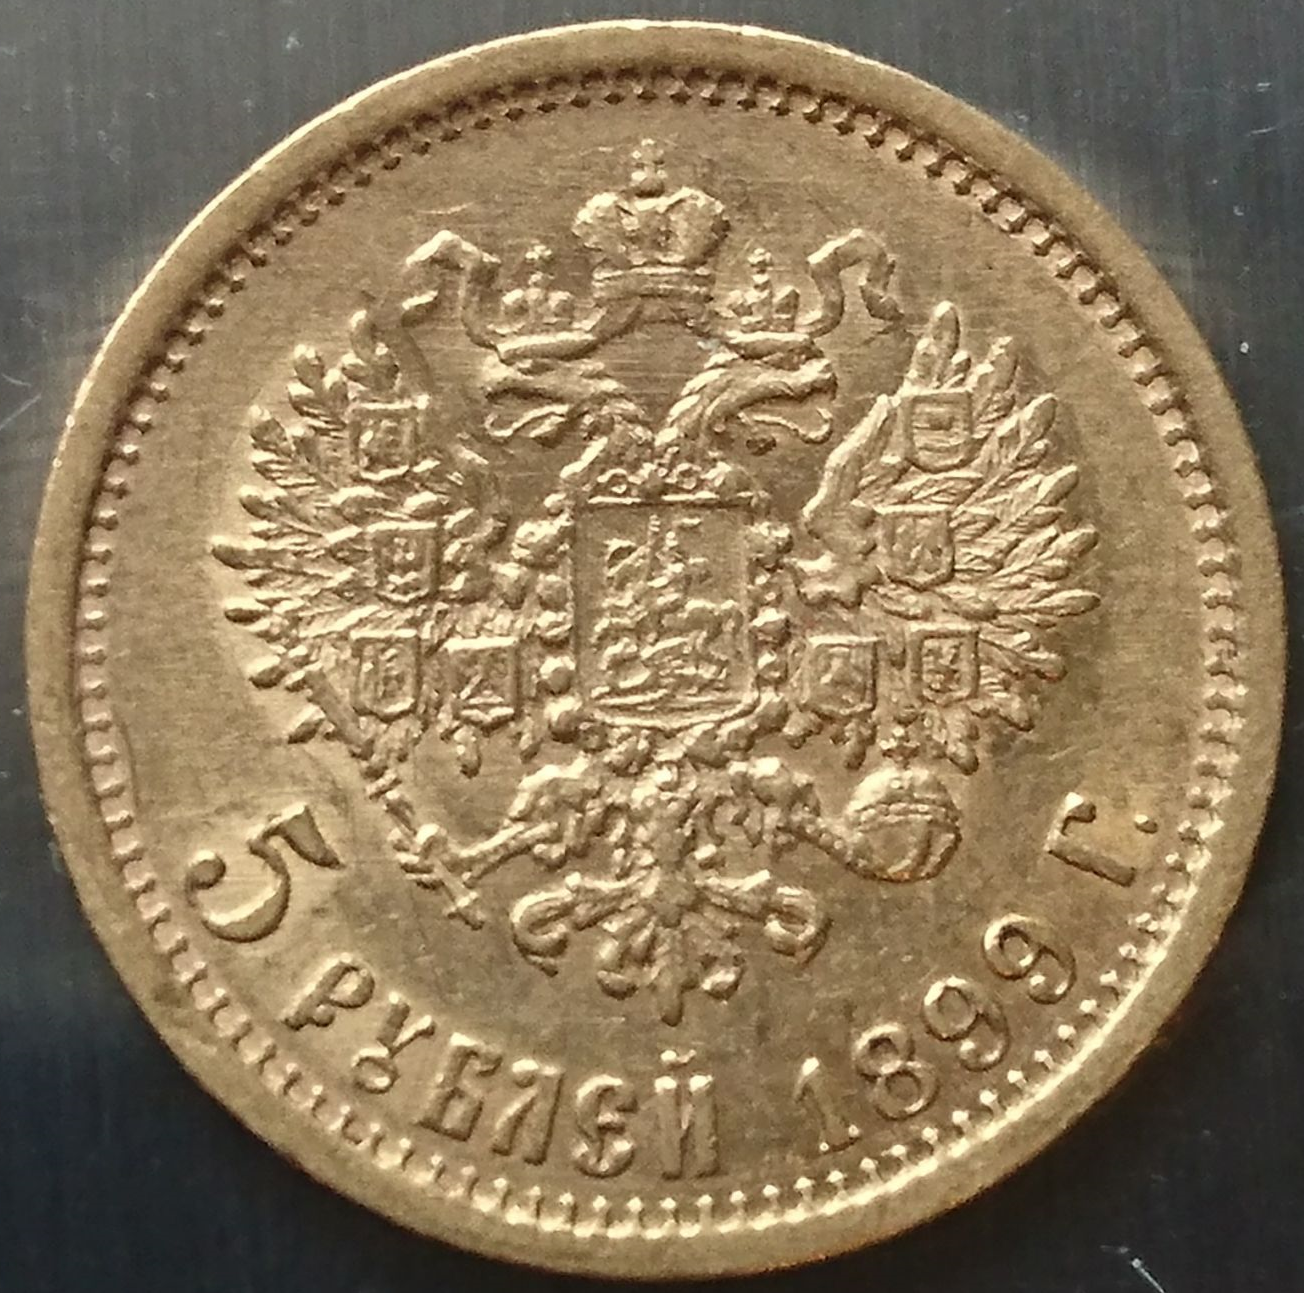 5 рублей 1898 года. 5 Рублей 1897 года. Золото рейха.